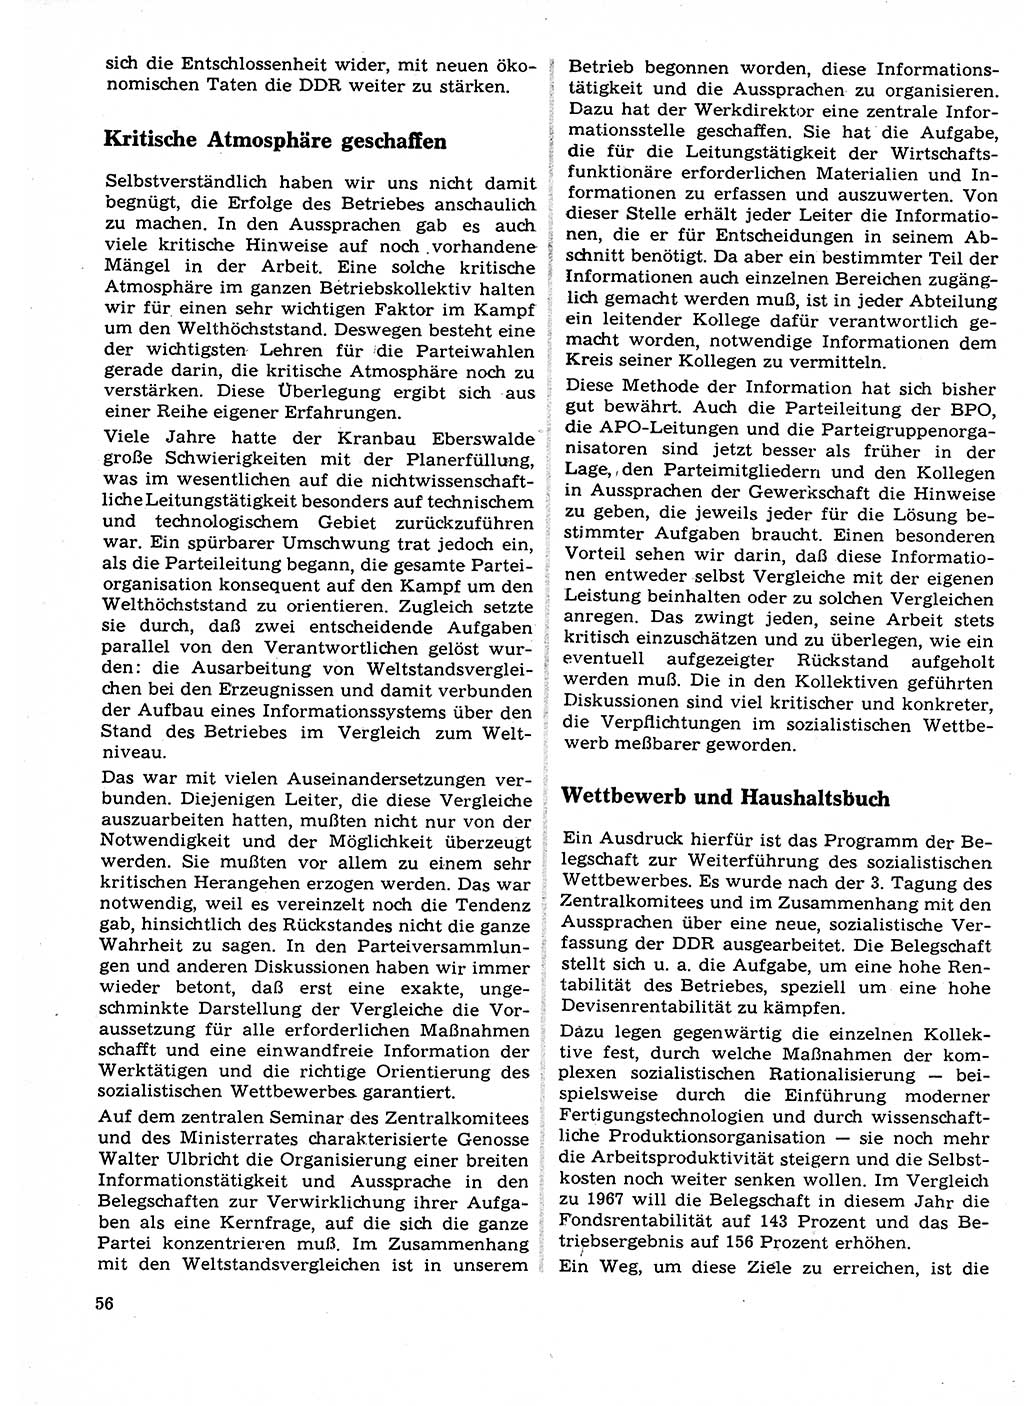 Neuer Weg (NW), Organ des Zentralkomitees (ZK) der SED (Sozialistische Einheitspartei Deutschlands) für Fragen des Parteilebens, 23. Jahrgang [Deutsche Demokratische Republik (DDR)] 1968, Seite 56 (NW ZK SED DDR 1968, S. 56)